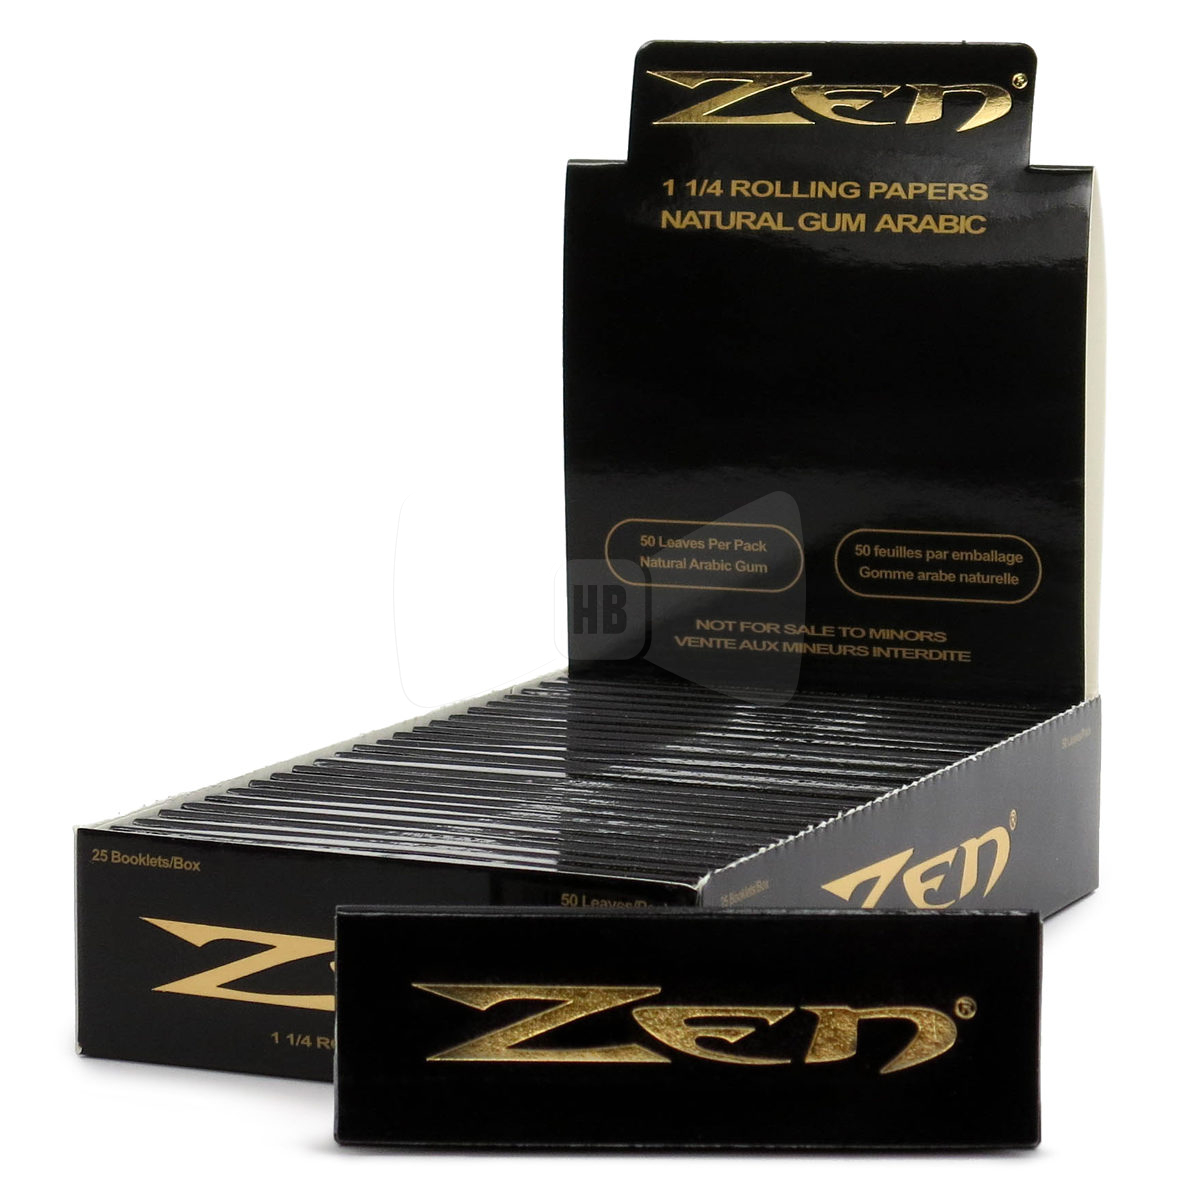 Zen 1 1/4 Rolling Papers Box